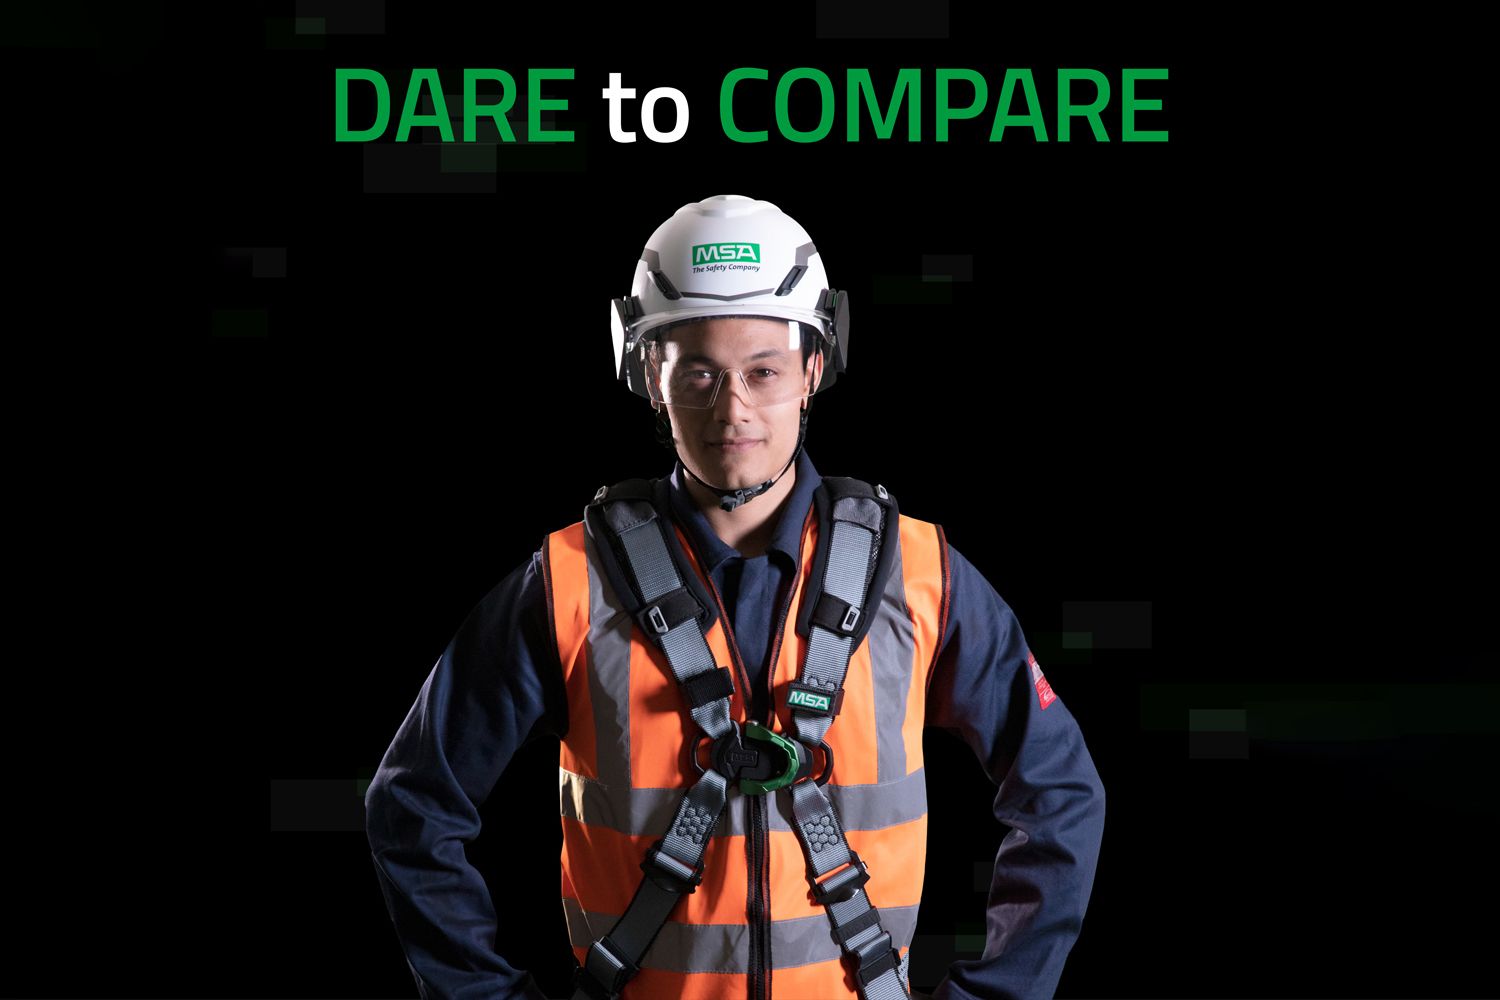 MSA Safety – do you dare to compare?